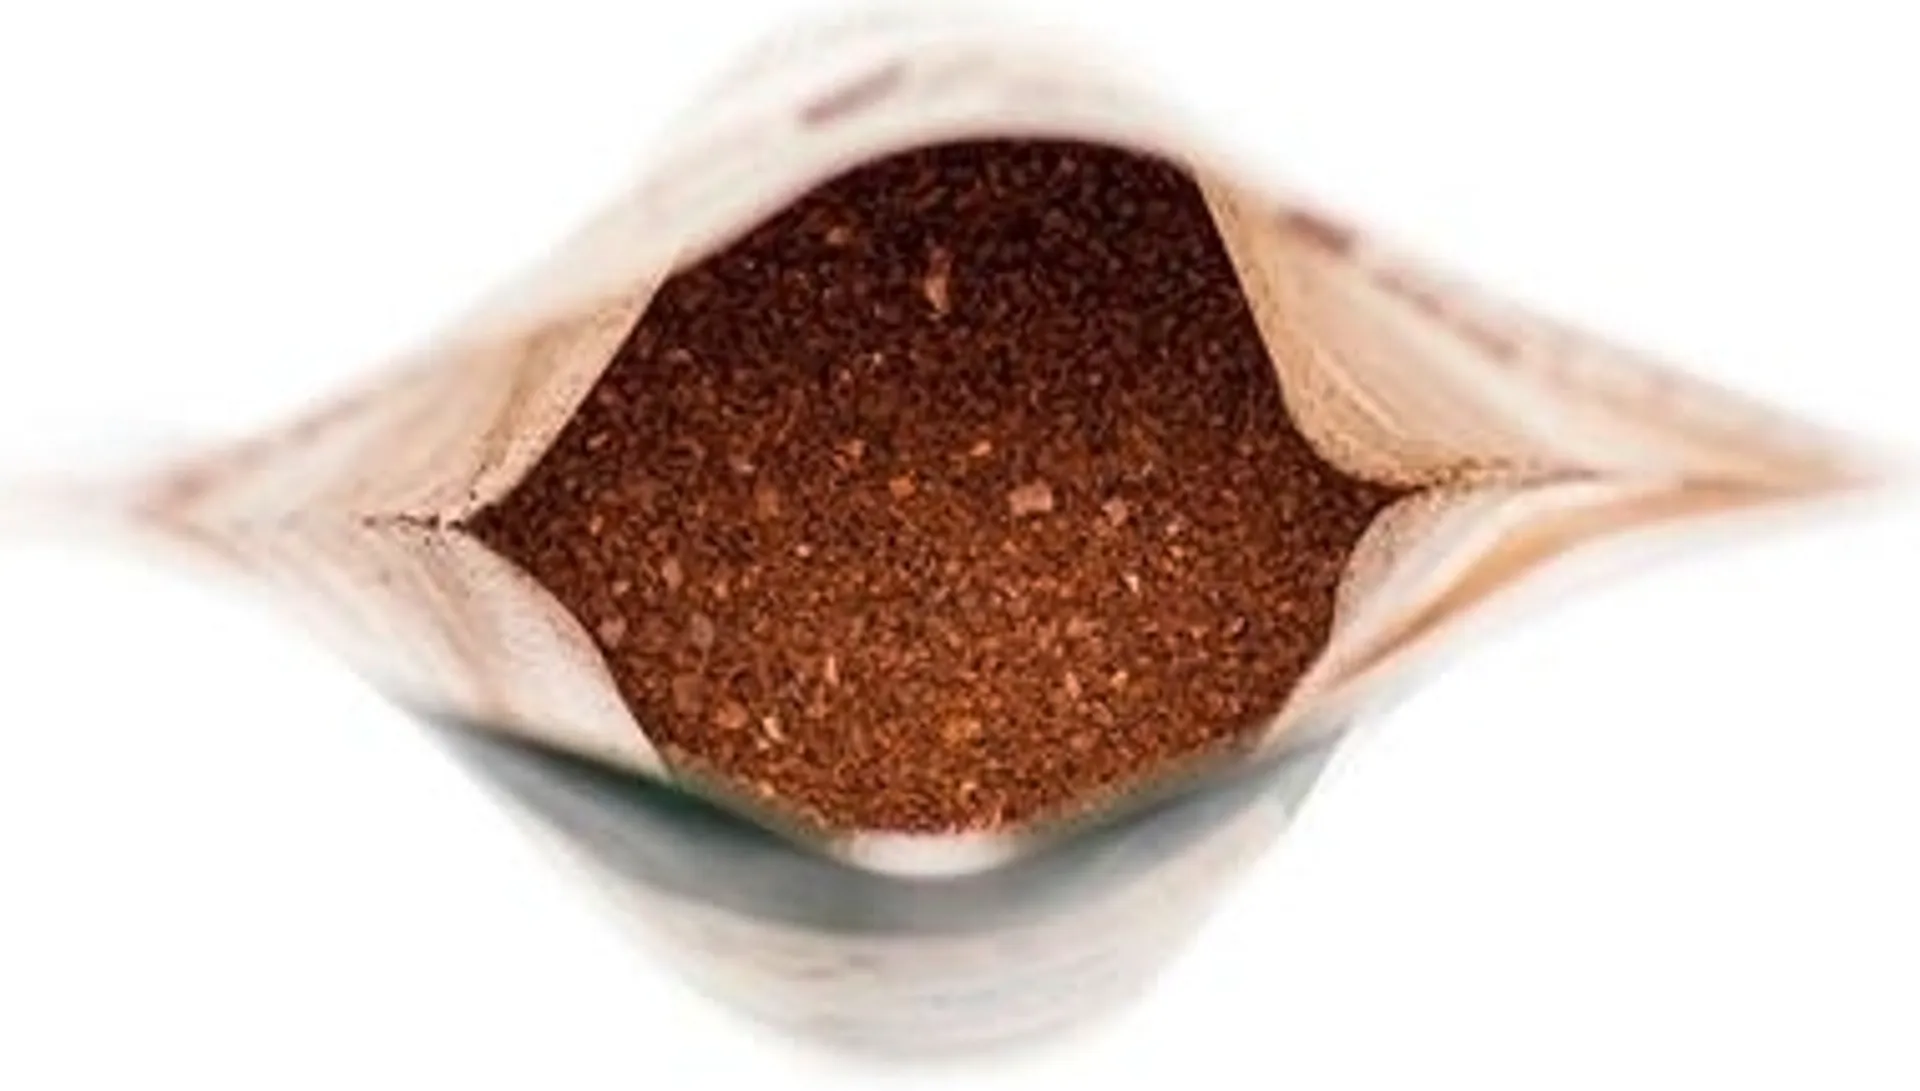 Grower's Cup kahvi Brazil 22g Fairtrade - 2